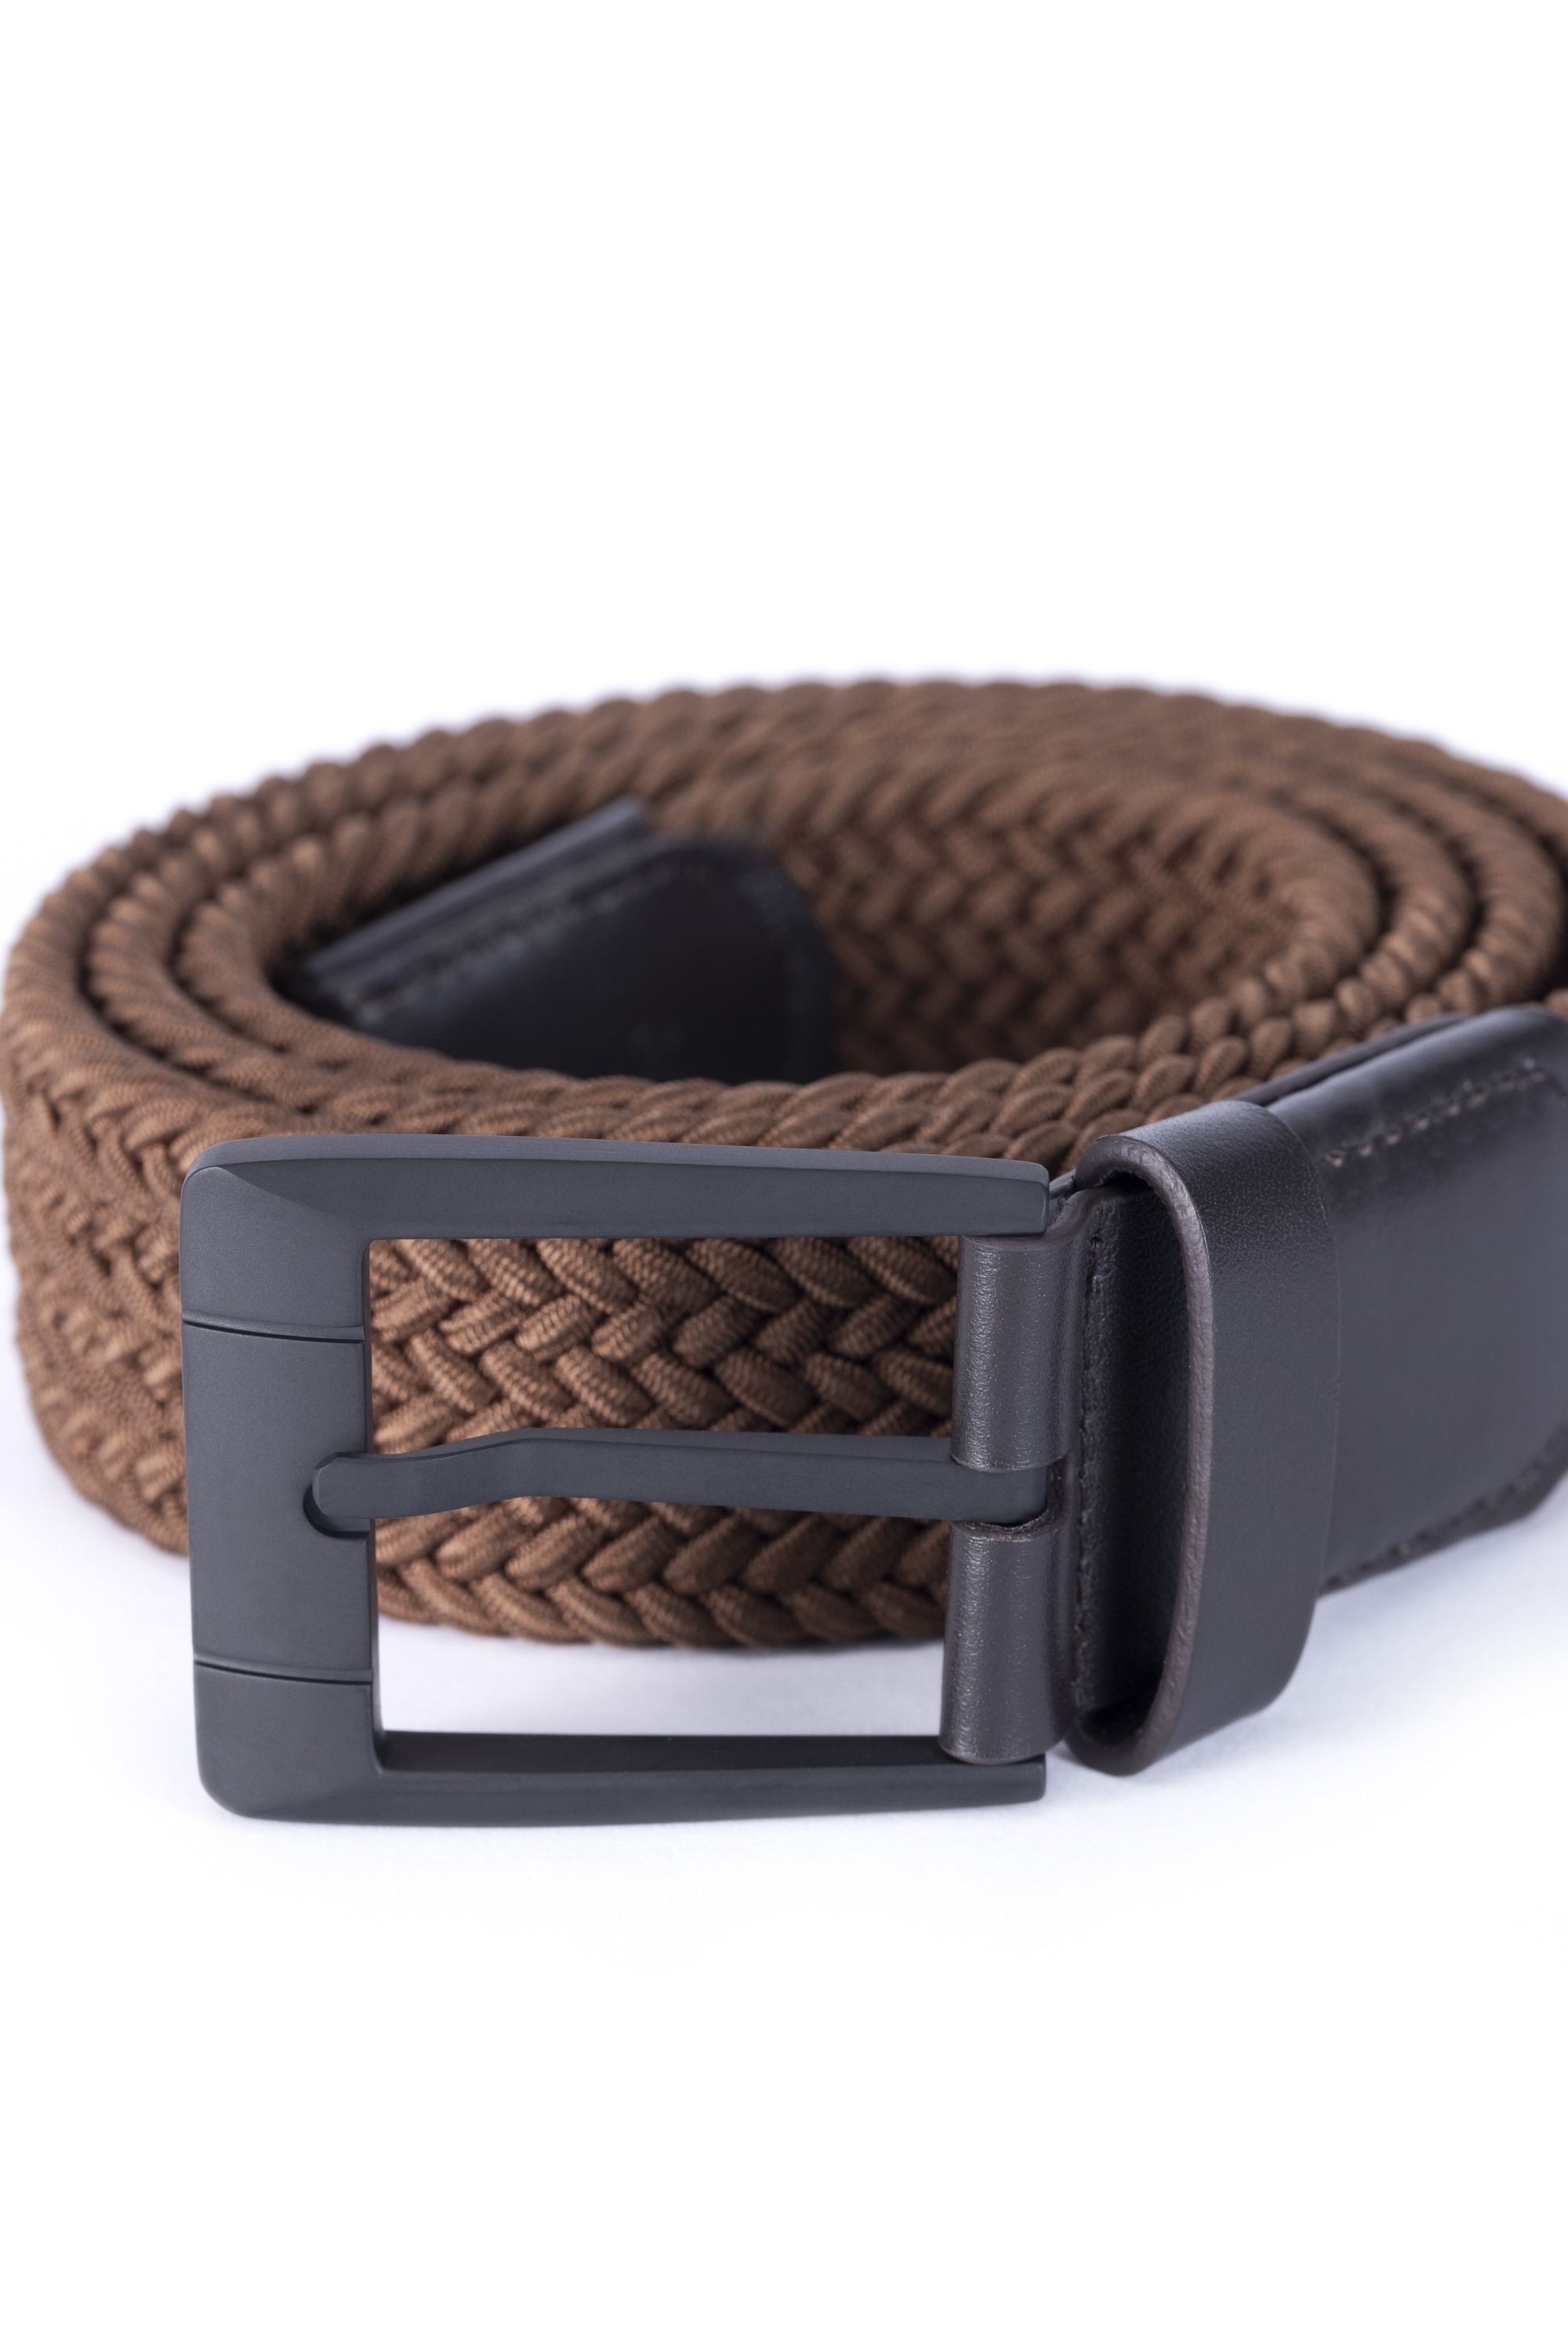 Elastic belt - Product - LEVADE - Shop - Members' Portal - The